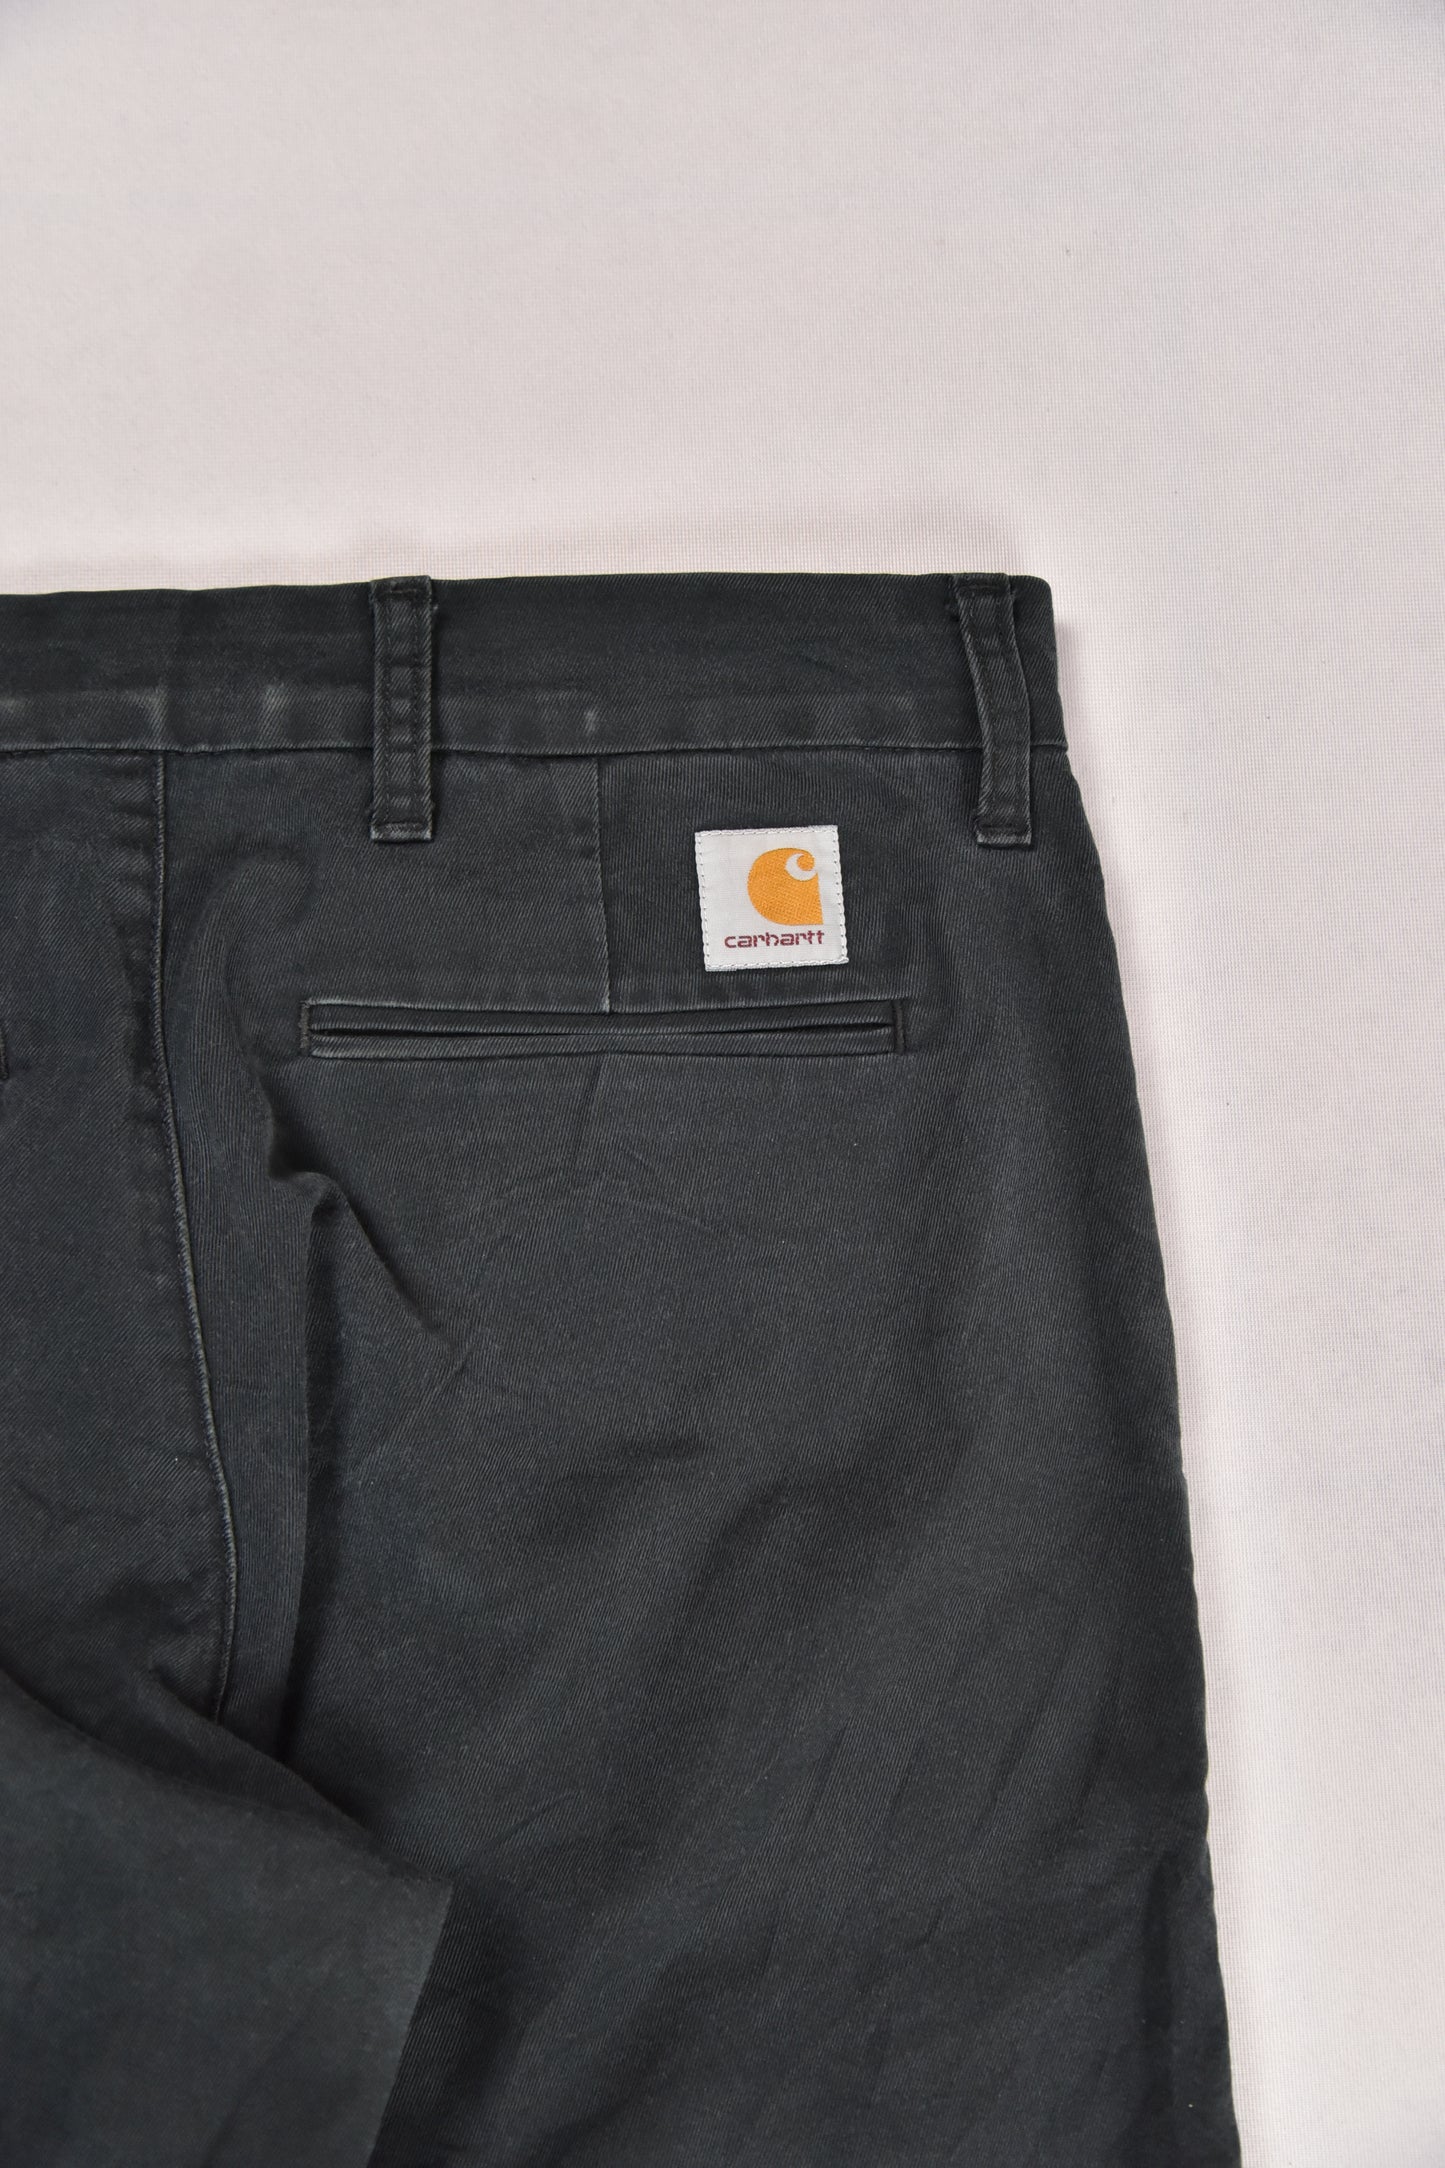 Carhartt Pants Vintage / 32x32